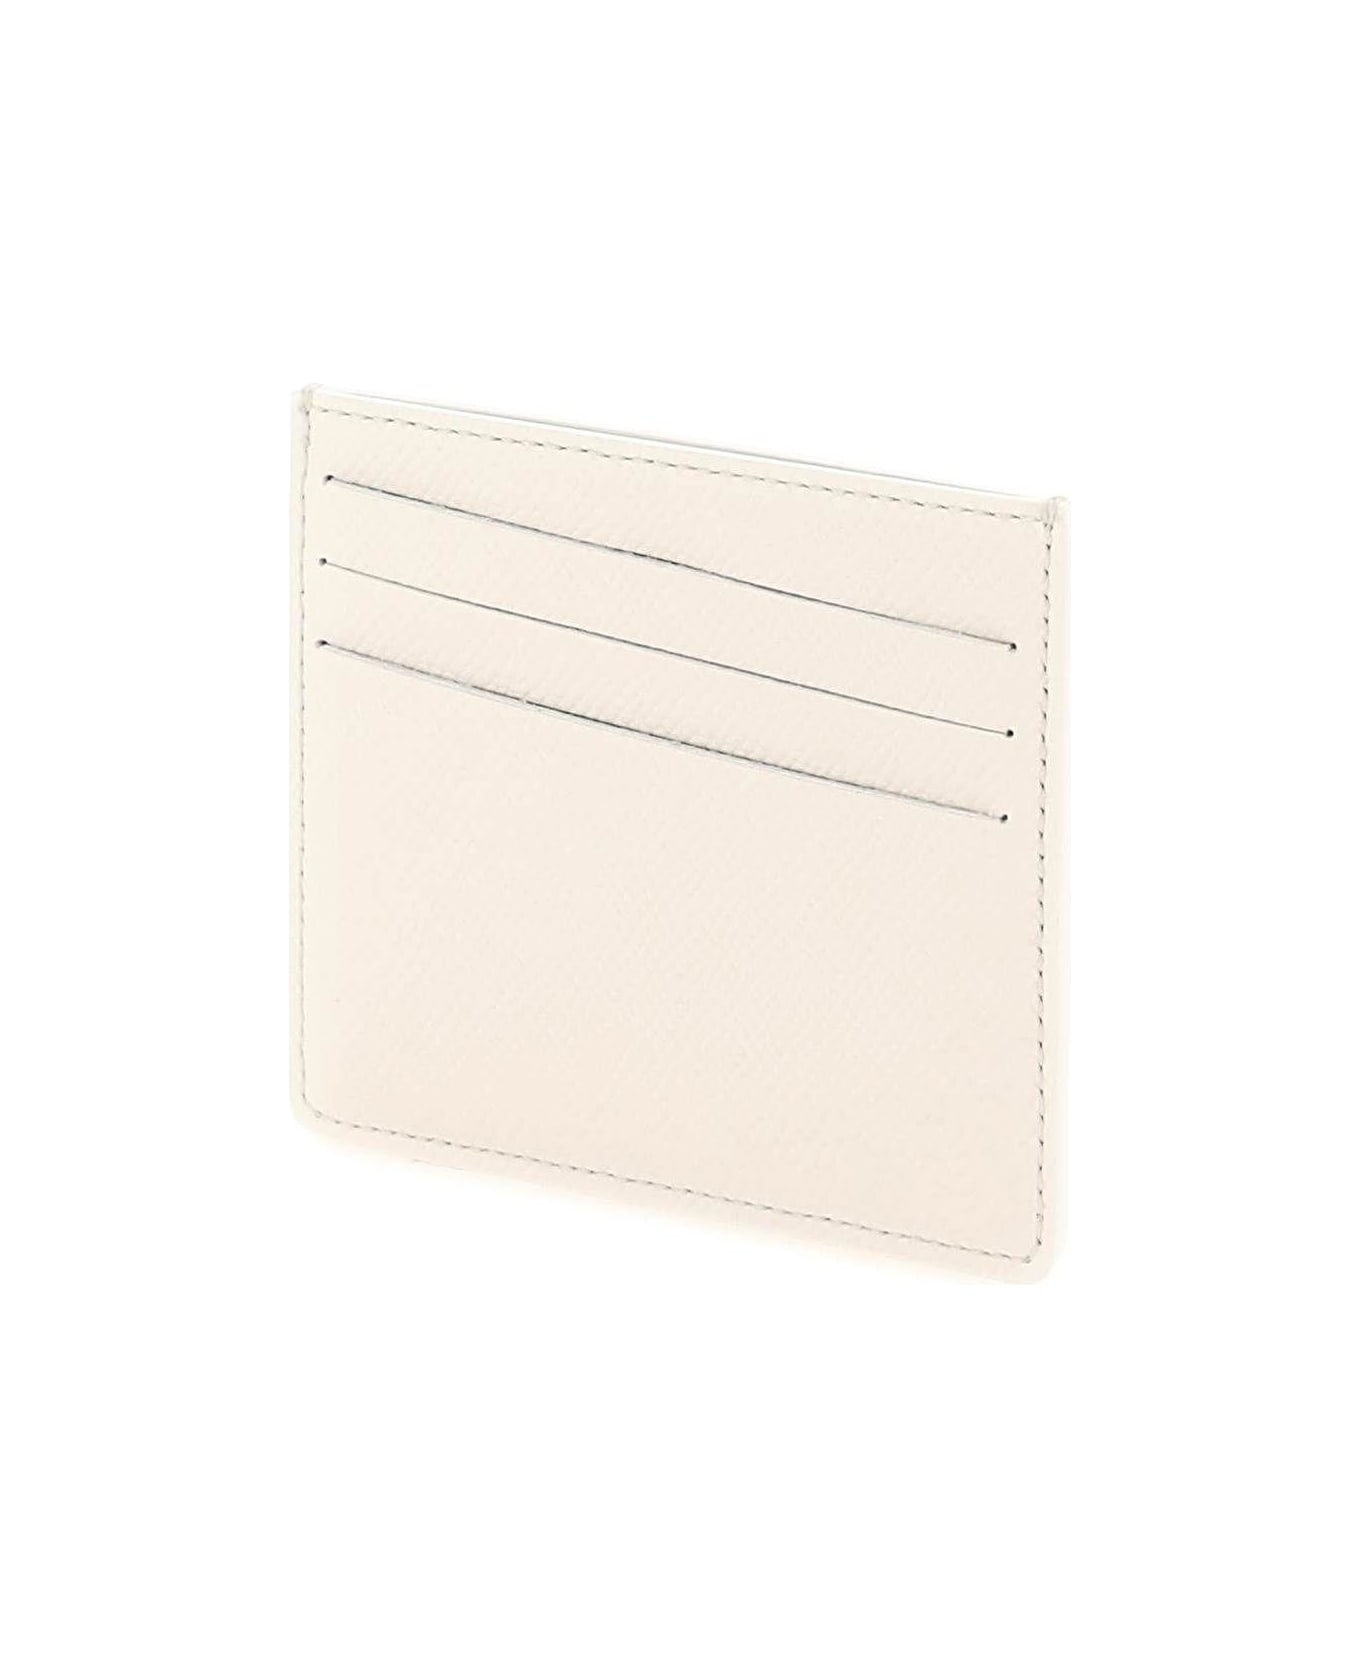 Maison Margiela Card Holder - White 財布